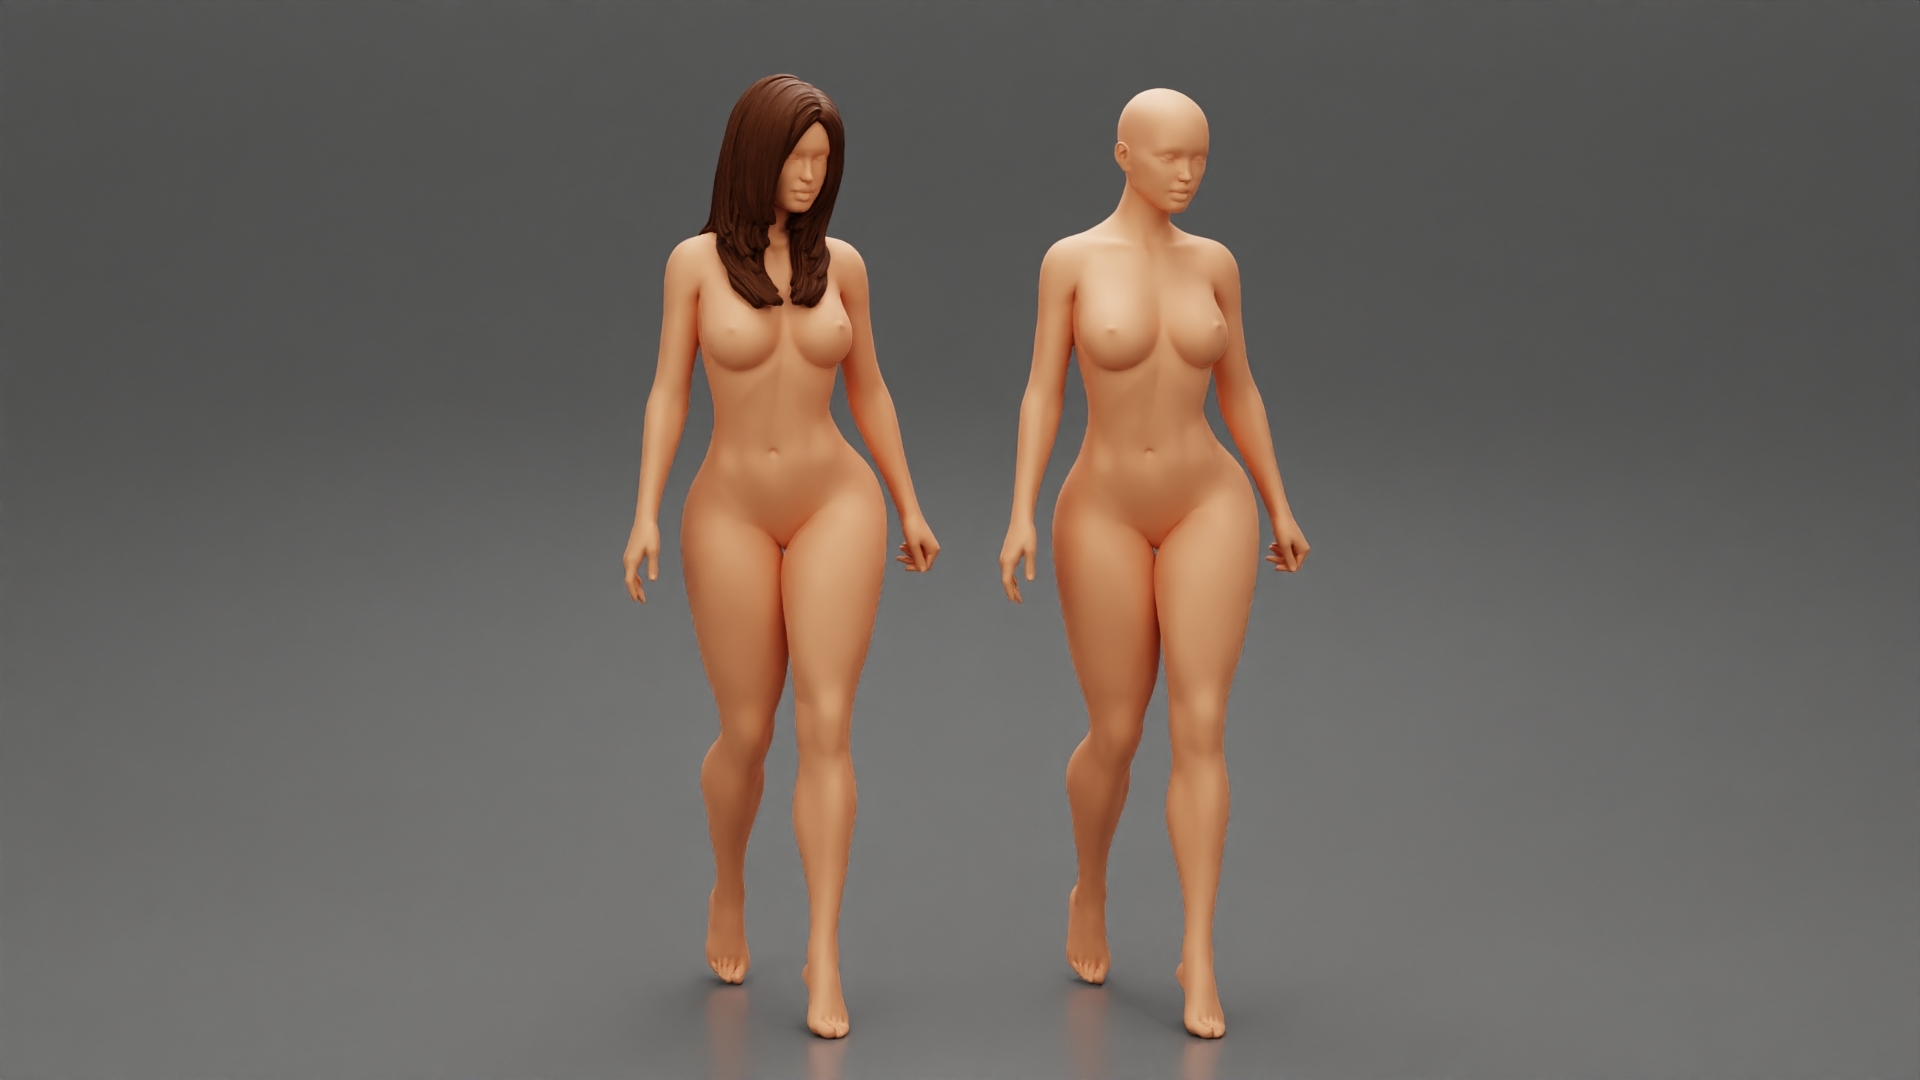 модели голых людей фото 2